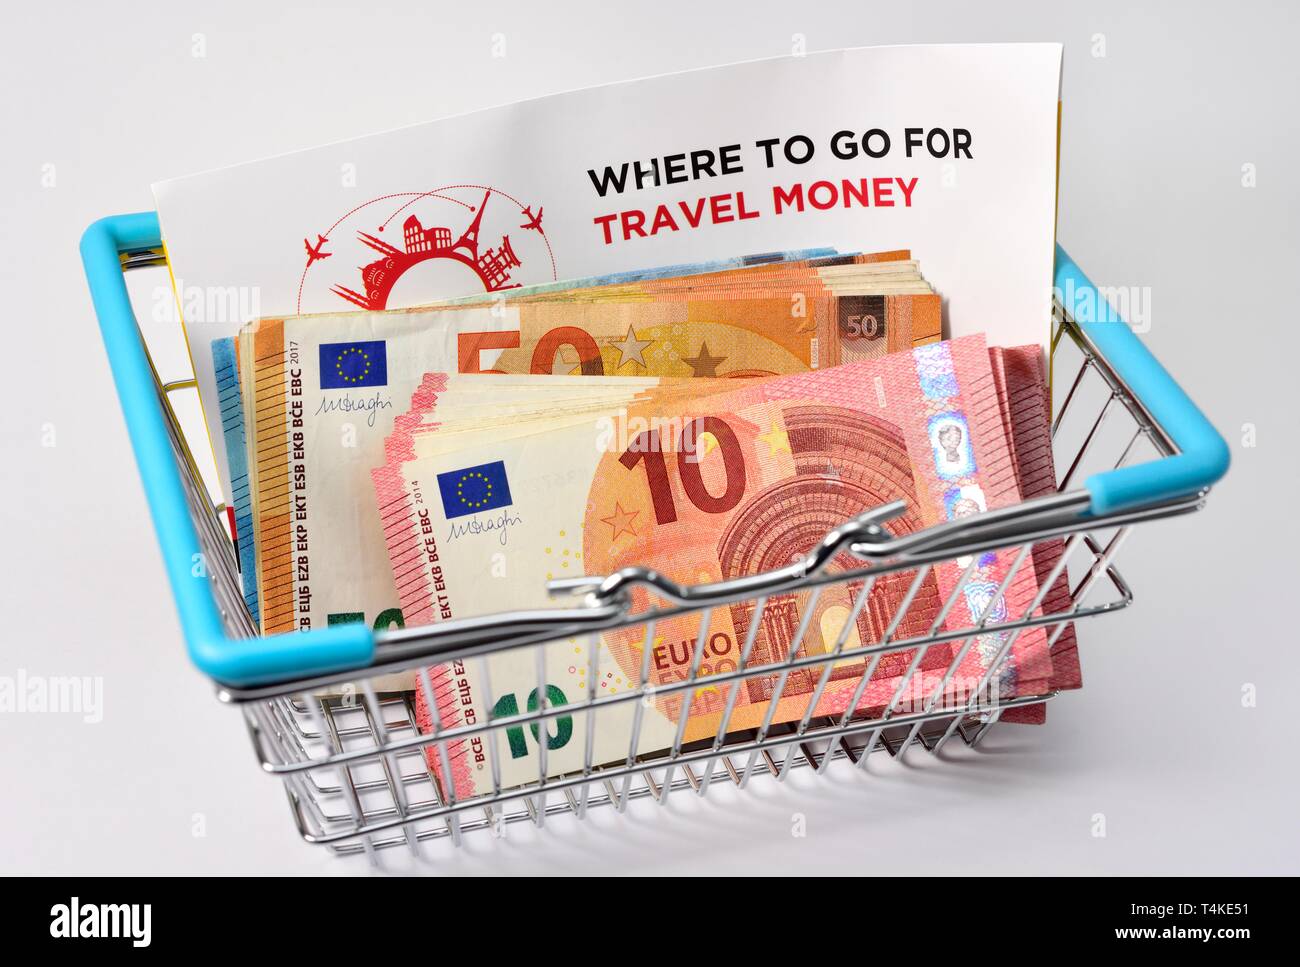 Travel money concept,shopping basket,euro bank notes, Stock Photo